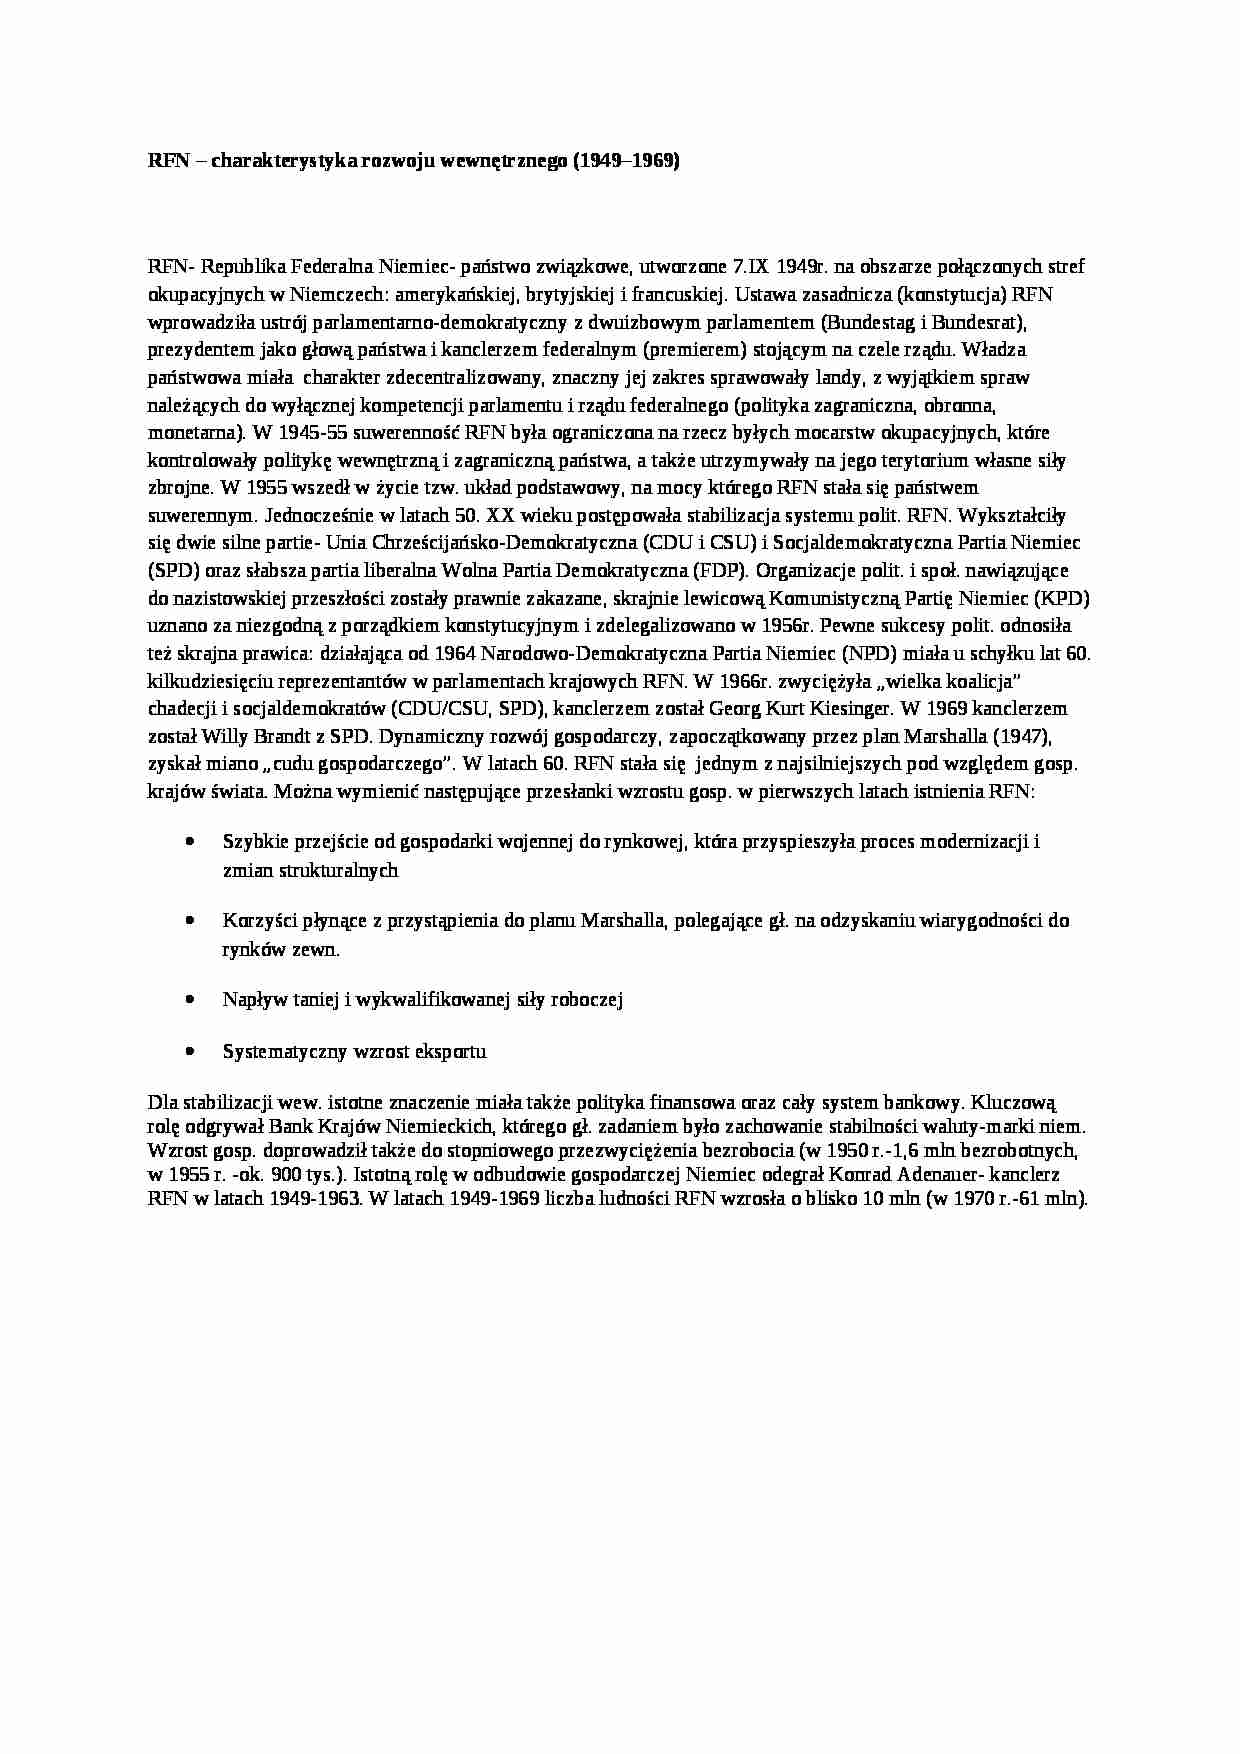 RFN- charakterystyka rozwoju wewnętrznego, opracowanie - strona 1